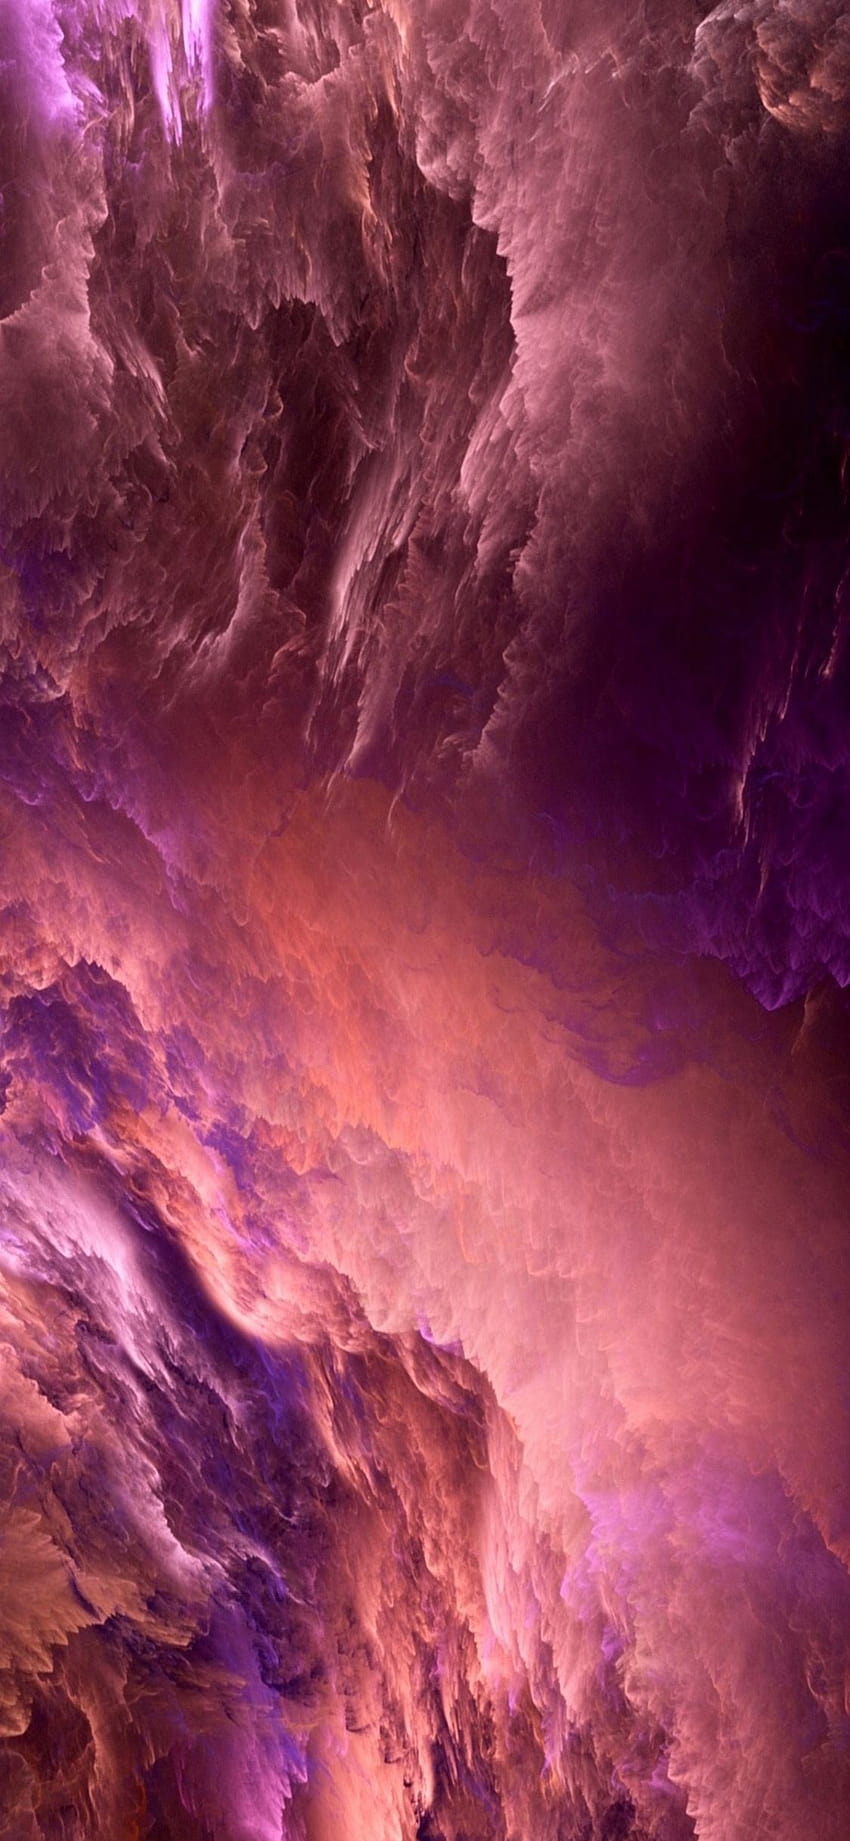 Nube iPhone X ad alta risoluzione 1125 x 2436 pixel, nuvole viola rosa iphone Sfondo del telefono HD